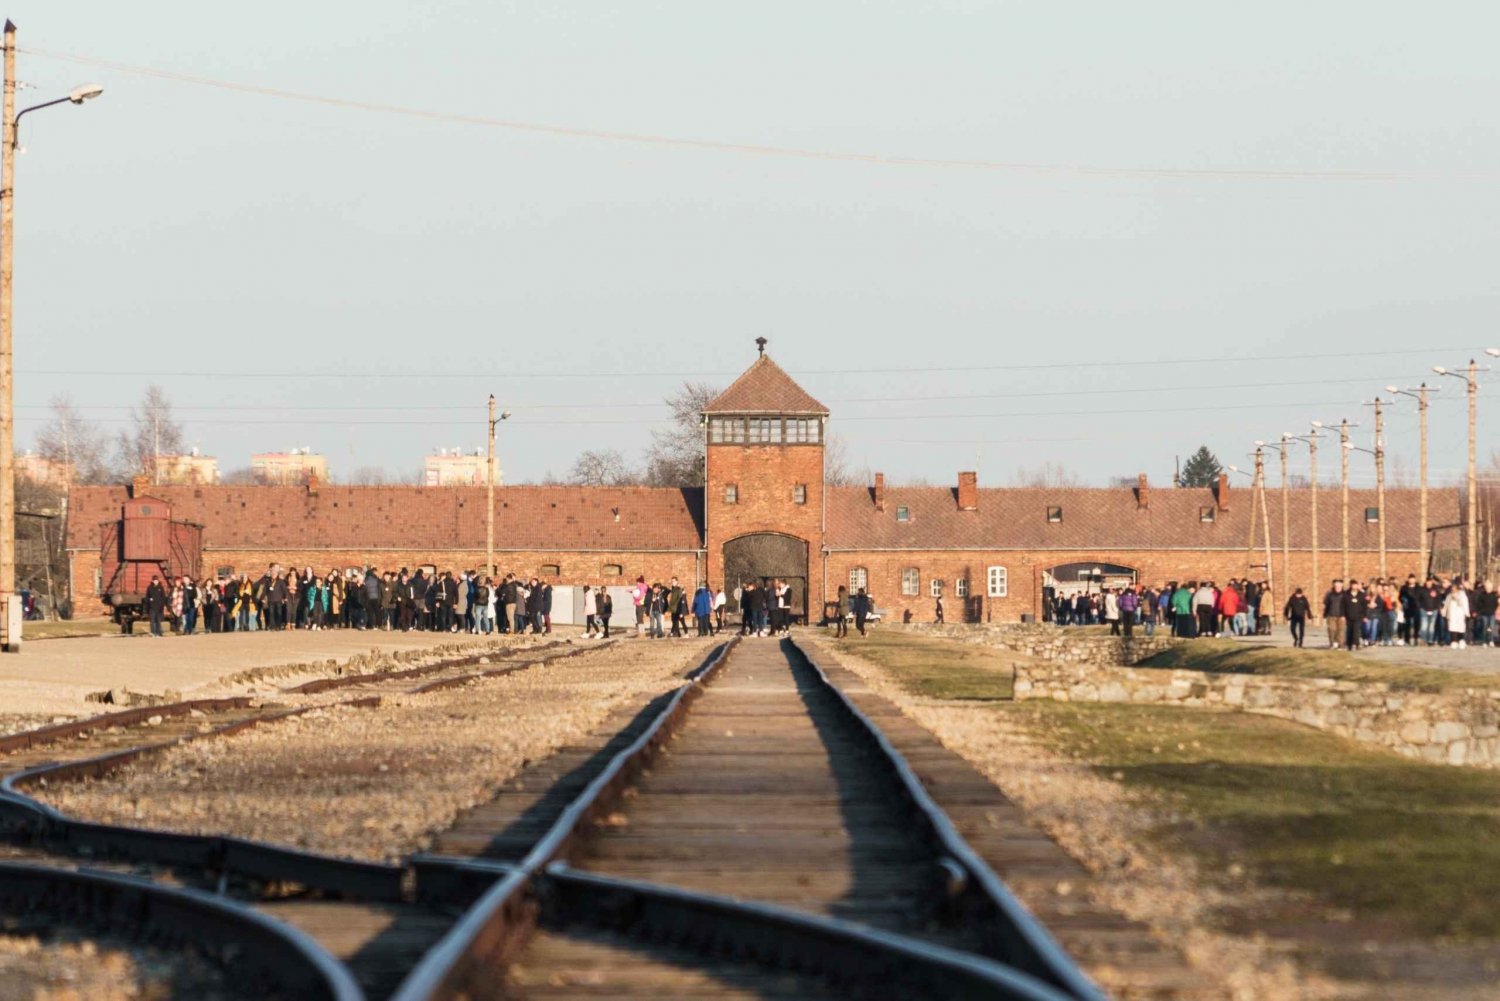 From Krakow: Auschwitz-Birkenau Guided Tour & Entry Ticket